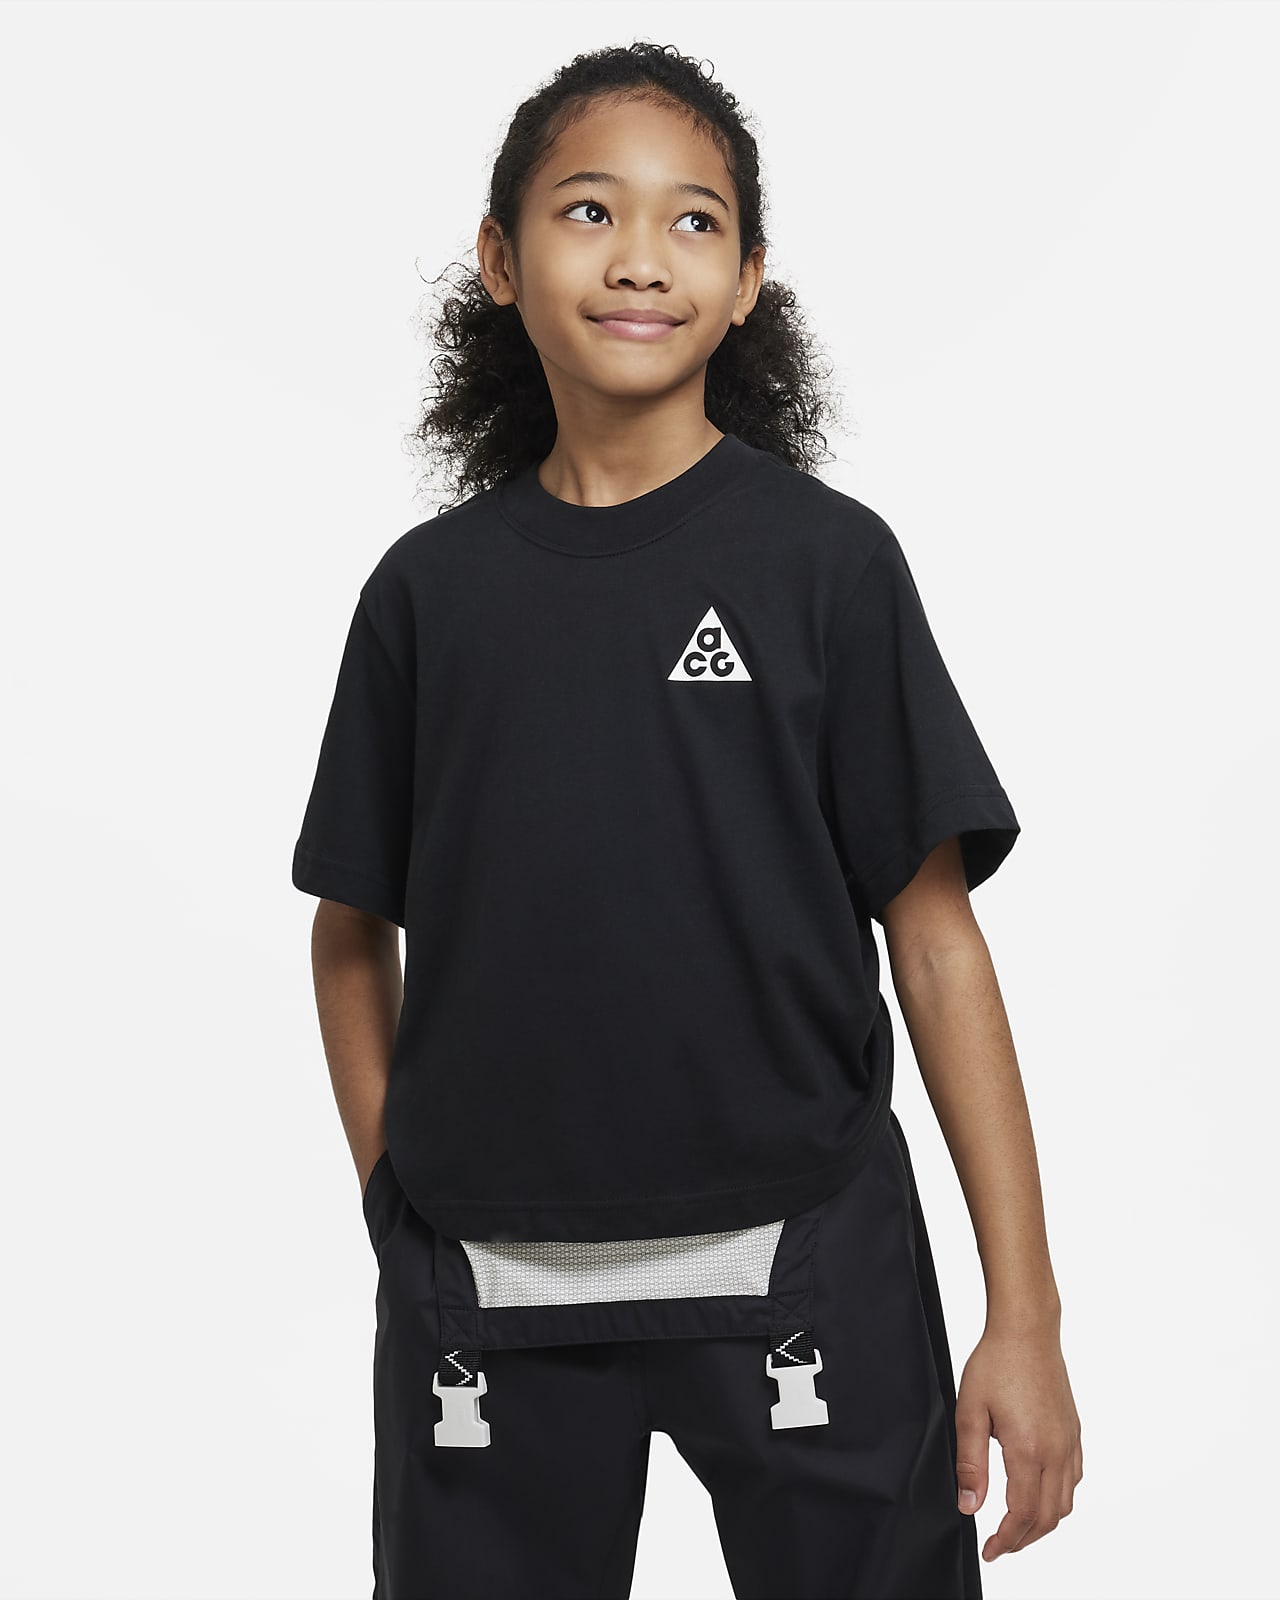 T-shirt Nike ACG Júnior (Rapariga)